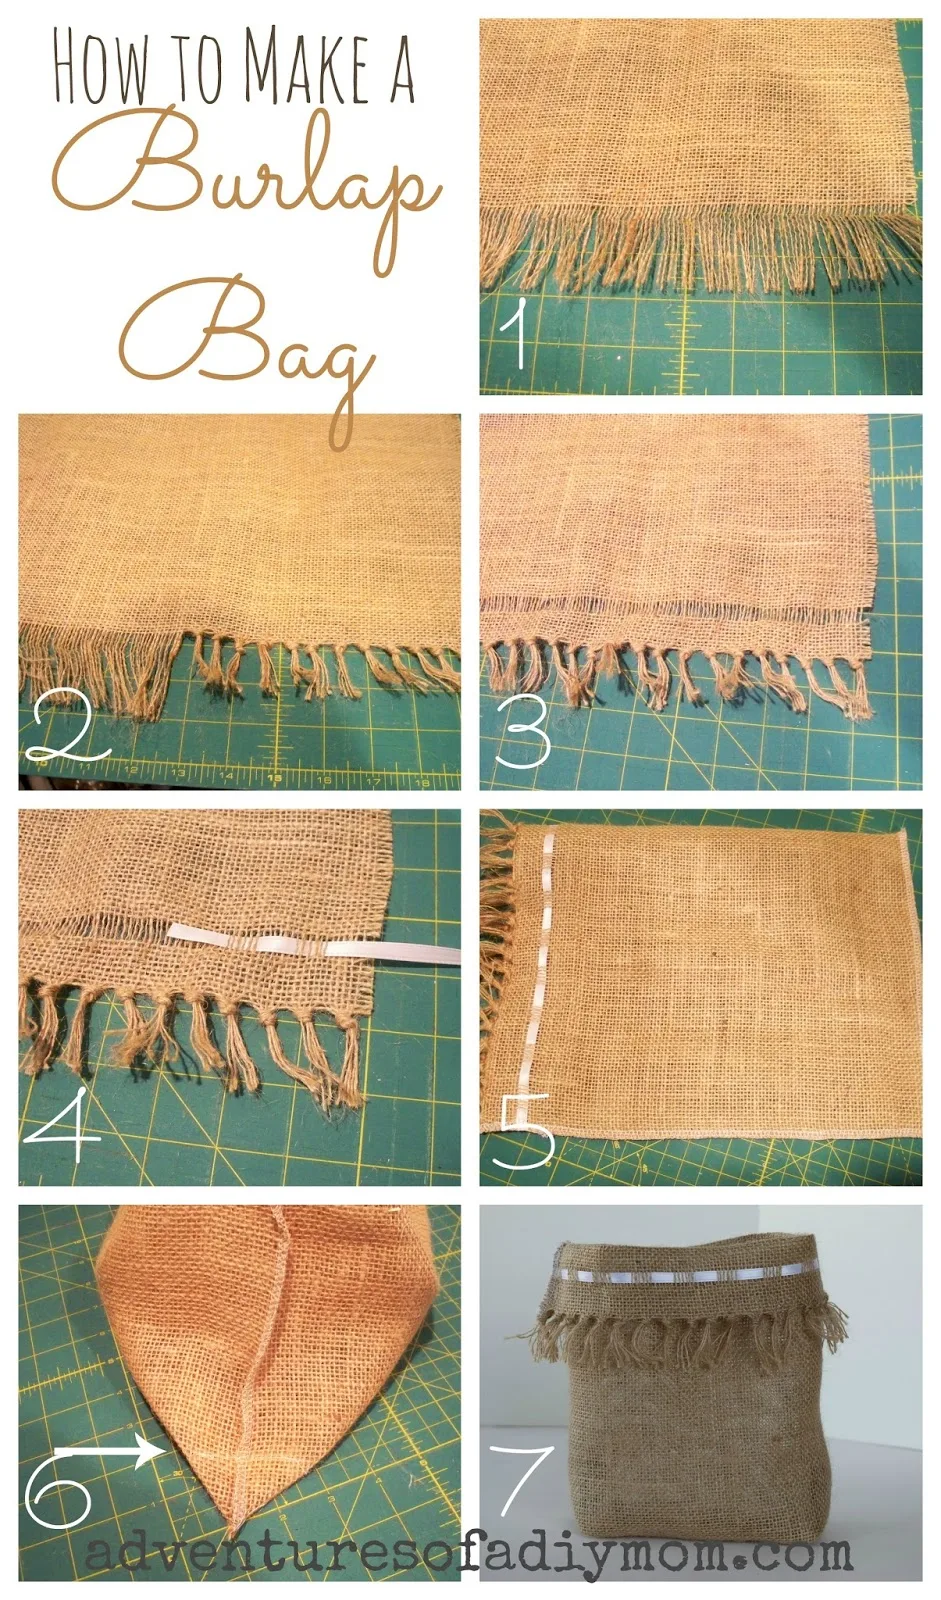 How to Make a Burlap Bag